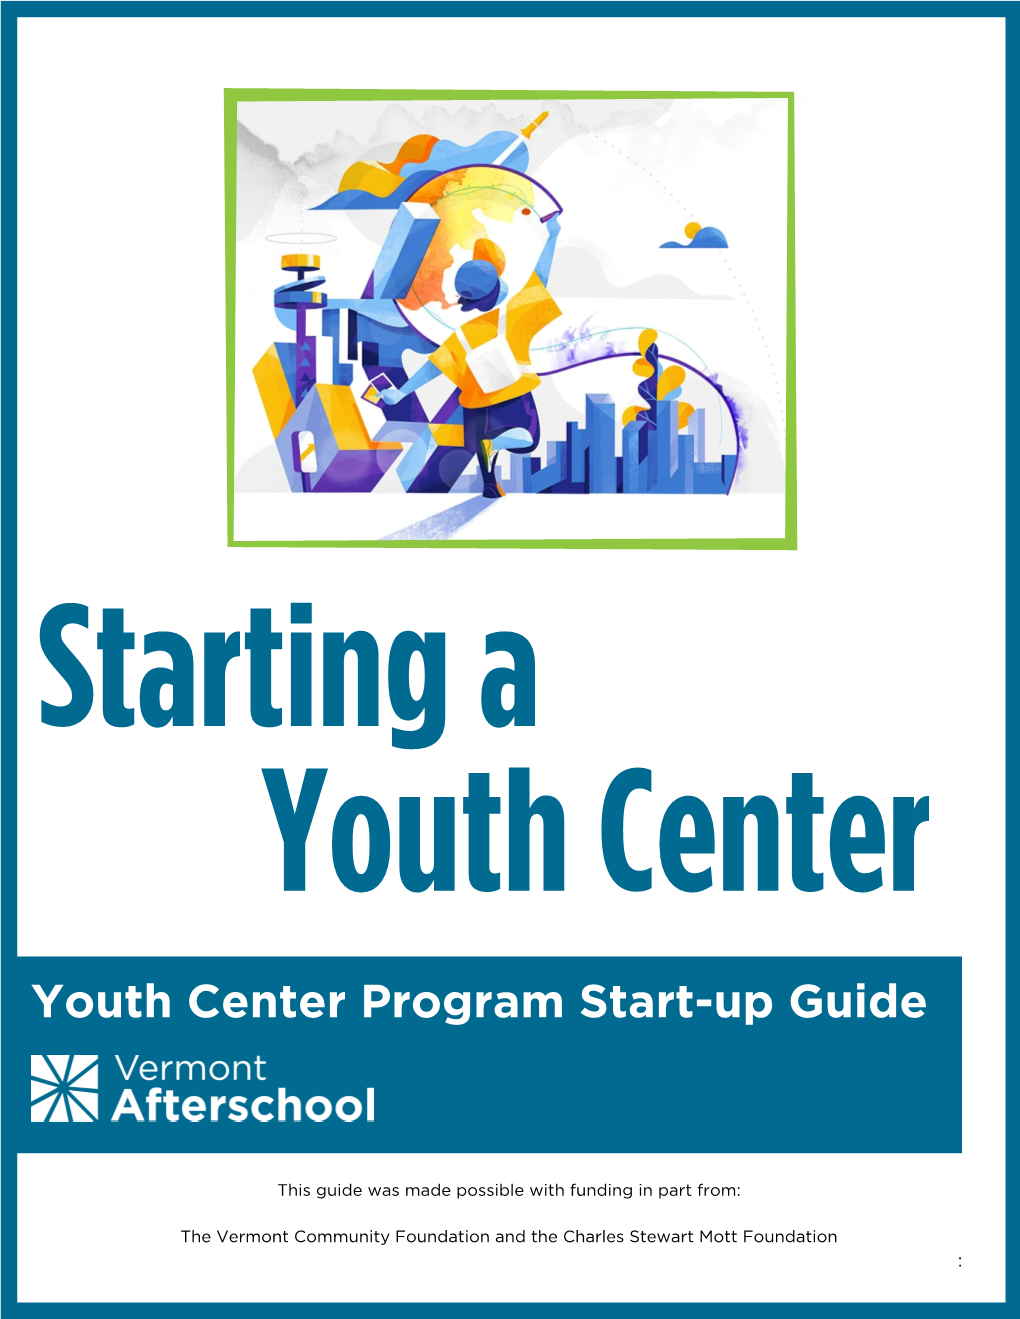 Youth Center Program Start -Up Guide